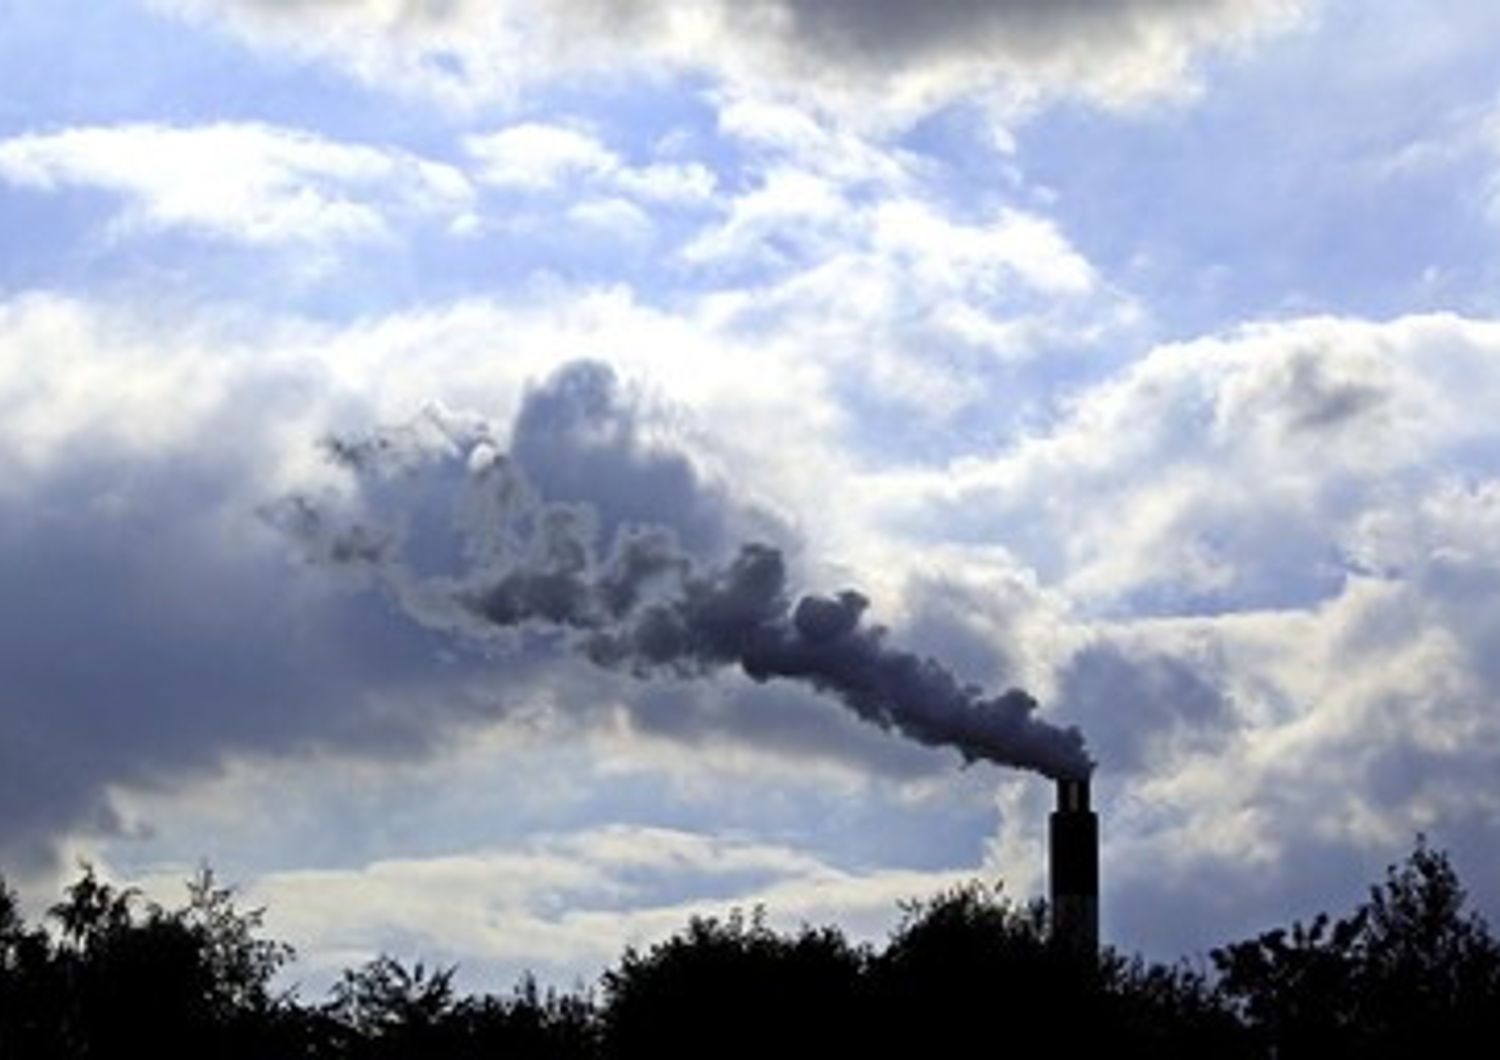 &nbsp; Industrie fumo smog ciminiere inquinamento gas serra